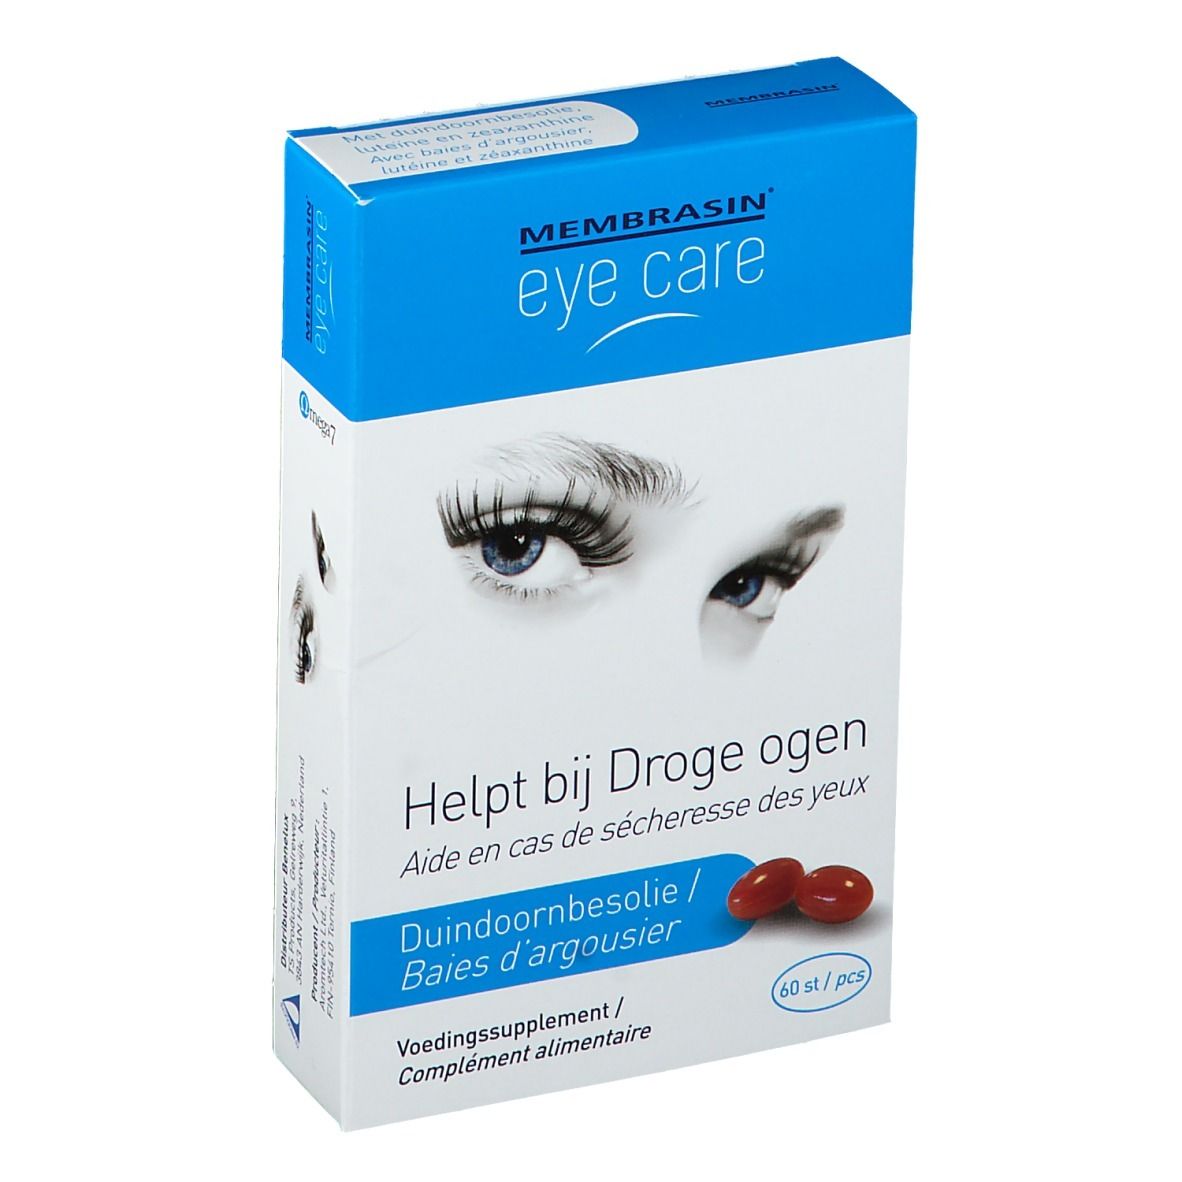 Membrasin® eye care